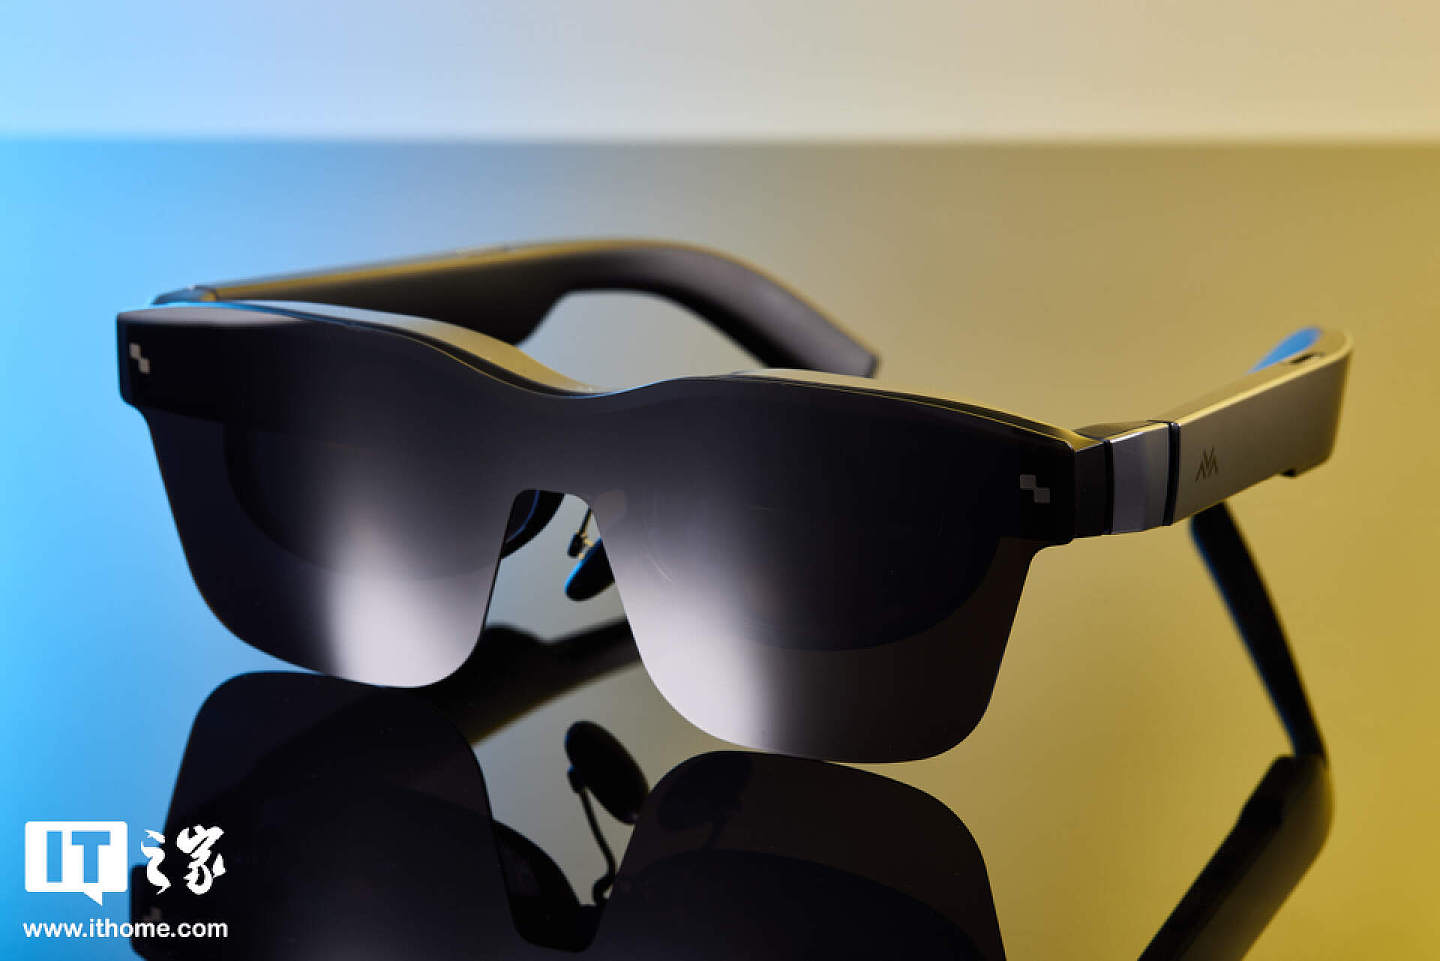 【IT之家开箱】201 英寸巨屏躺着看：雷鸟 Air 2s 智能眼镜图赏 - 3